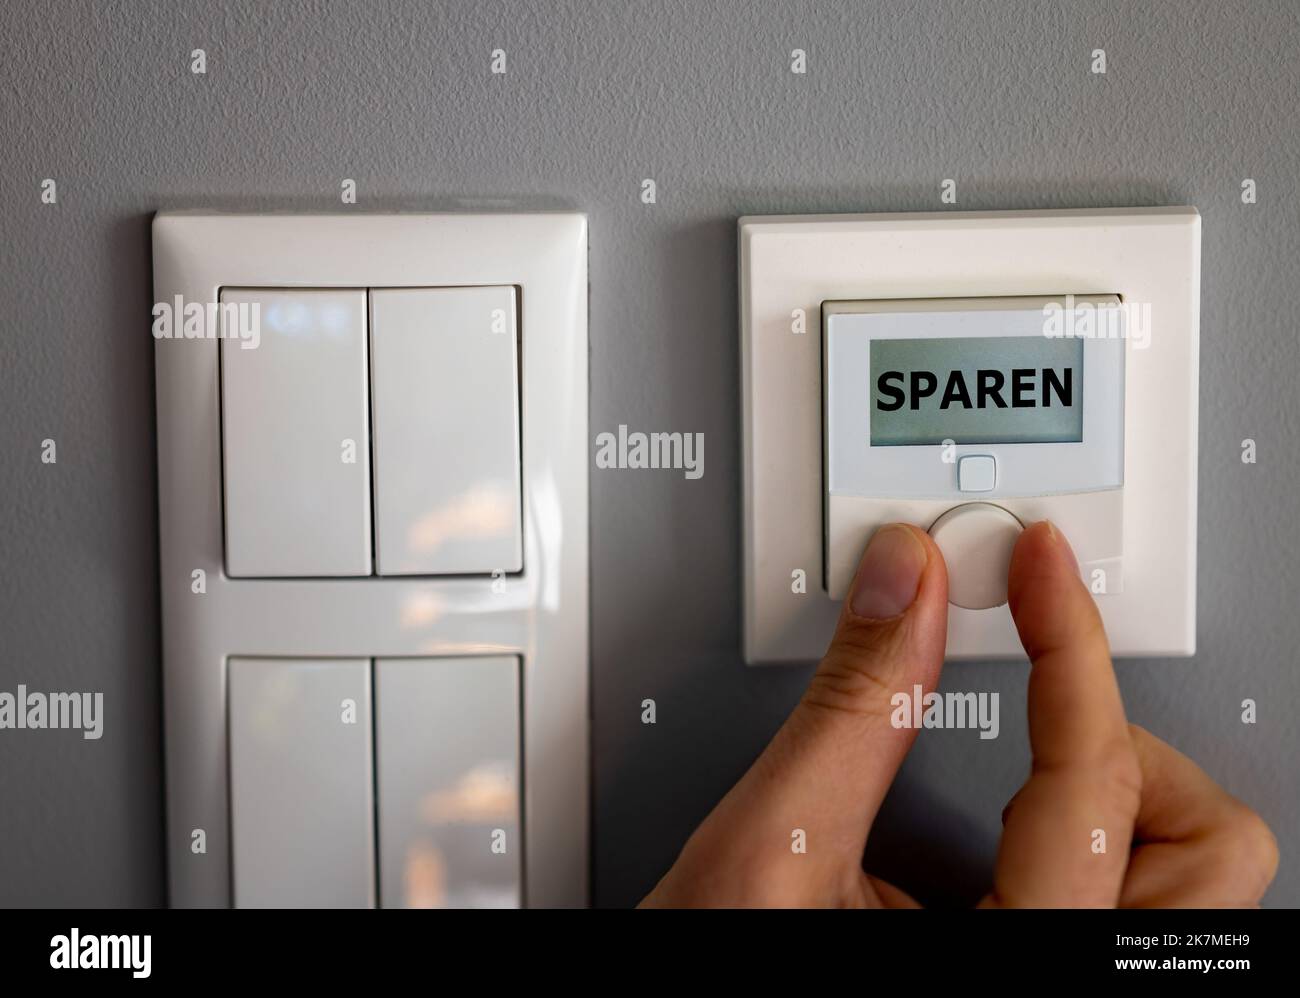 La mano modifica la temperatura su un termostato elettronico. Sul display viene visualizzata la parola tedesca 'paren' (salvataggio). Simbolo per il risparmio energetico. Foto Stock